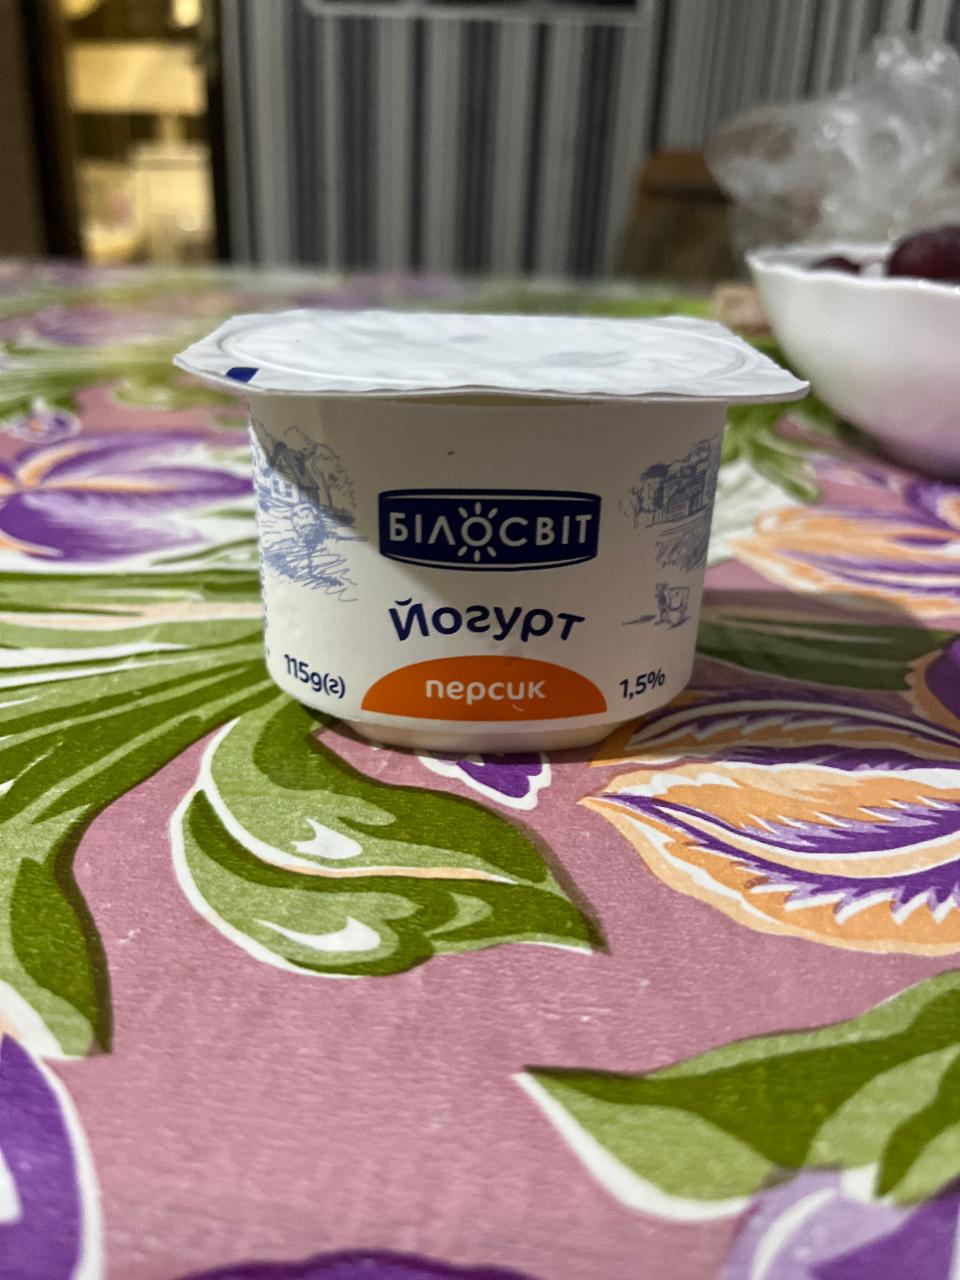 Фото - Йогурт 1.5% персик Білосвіт